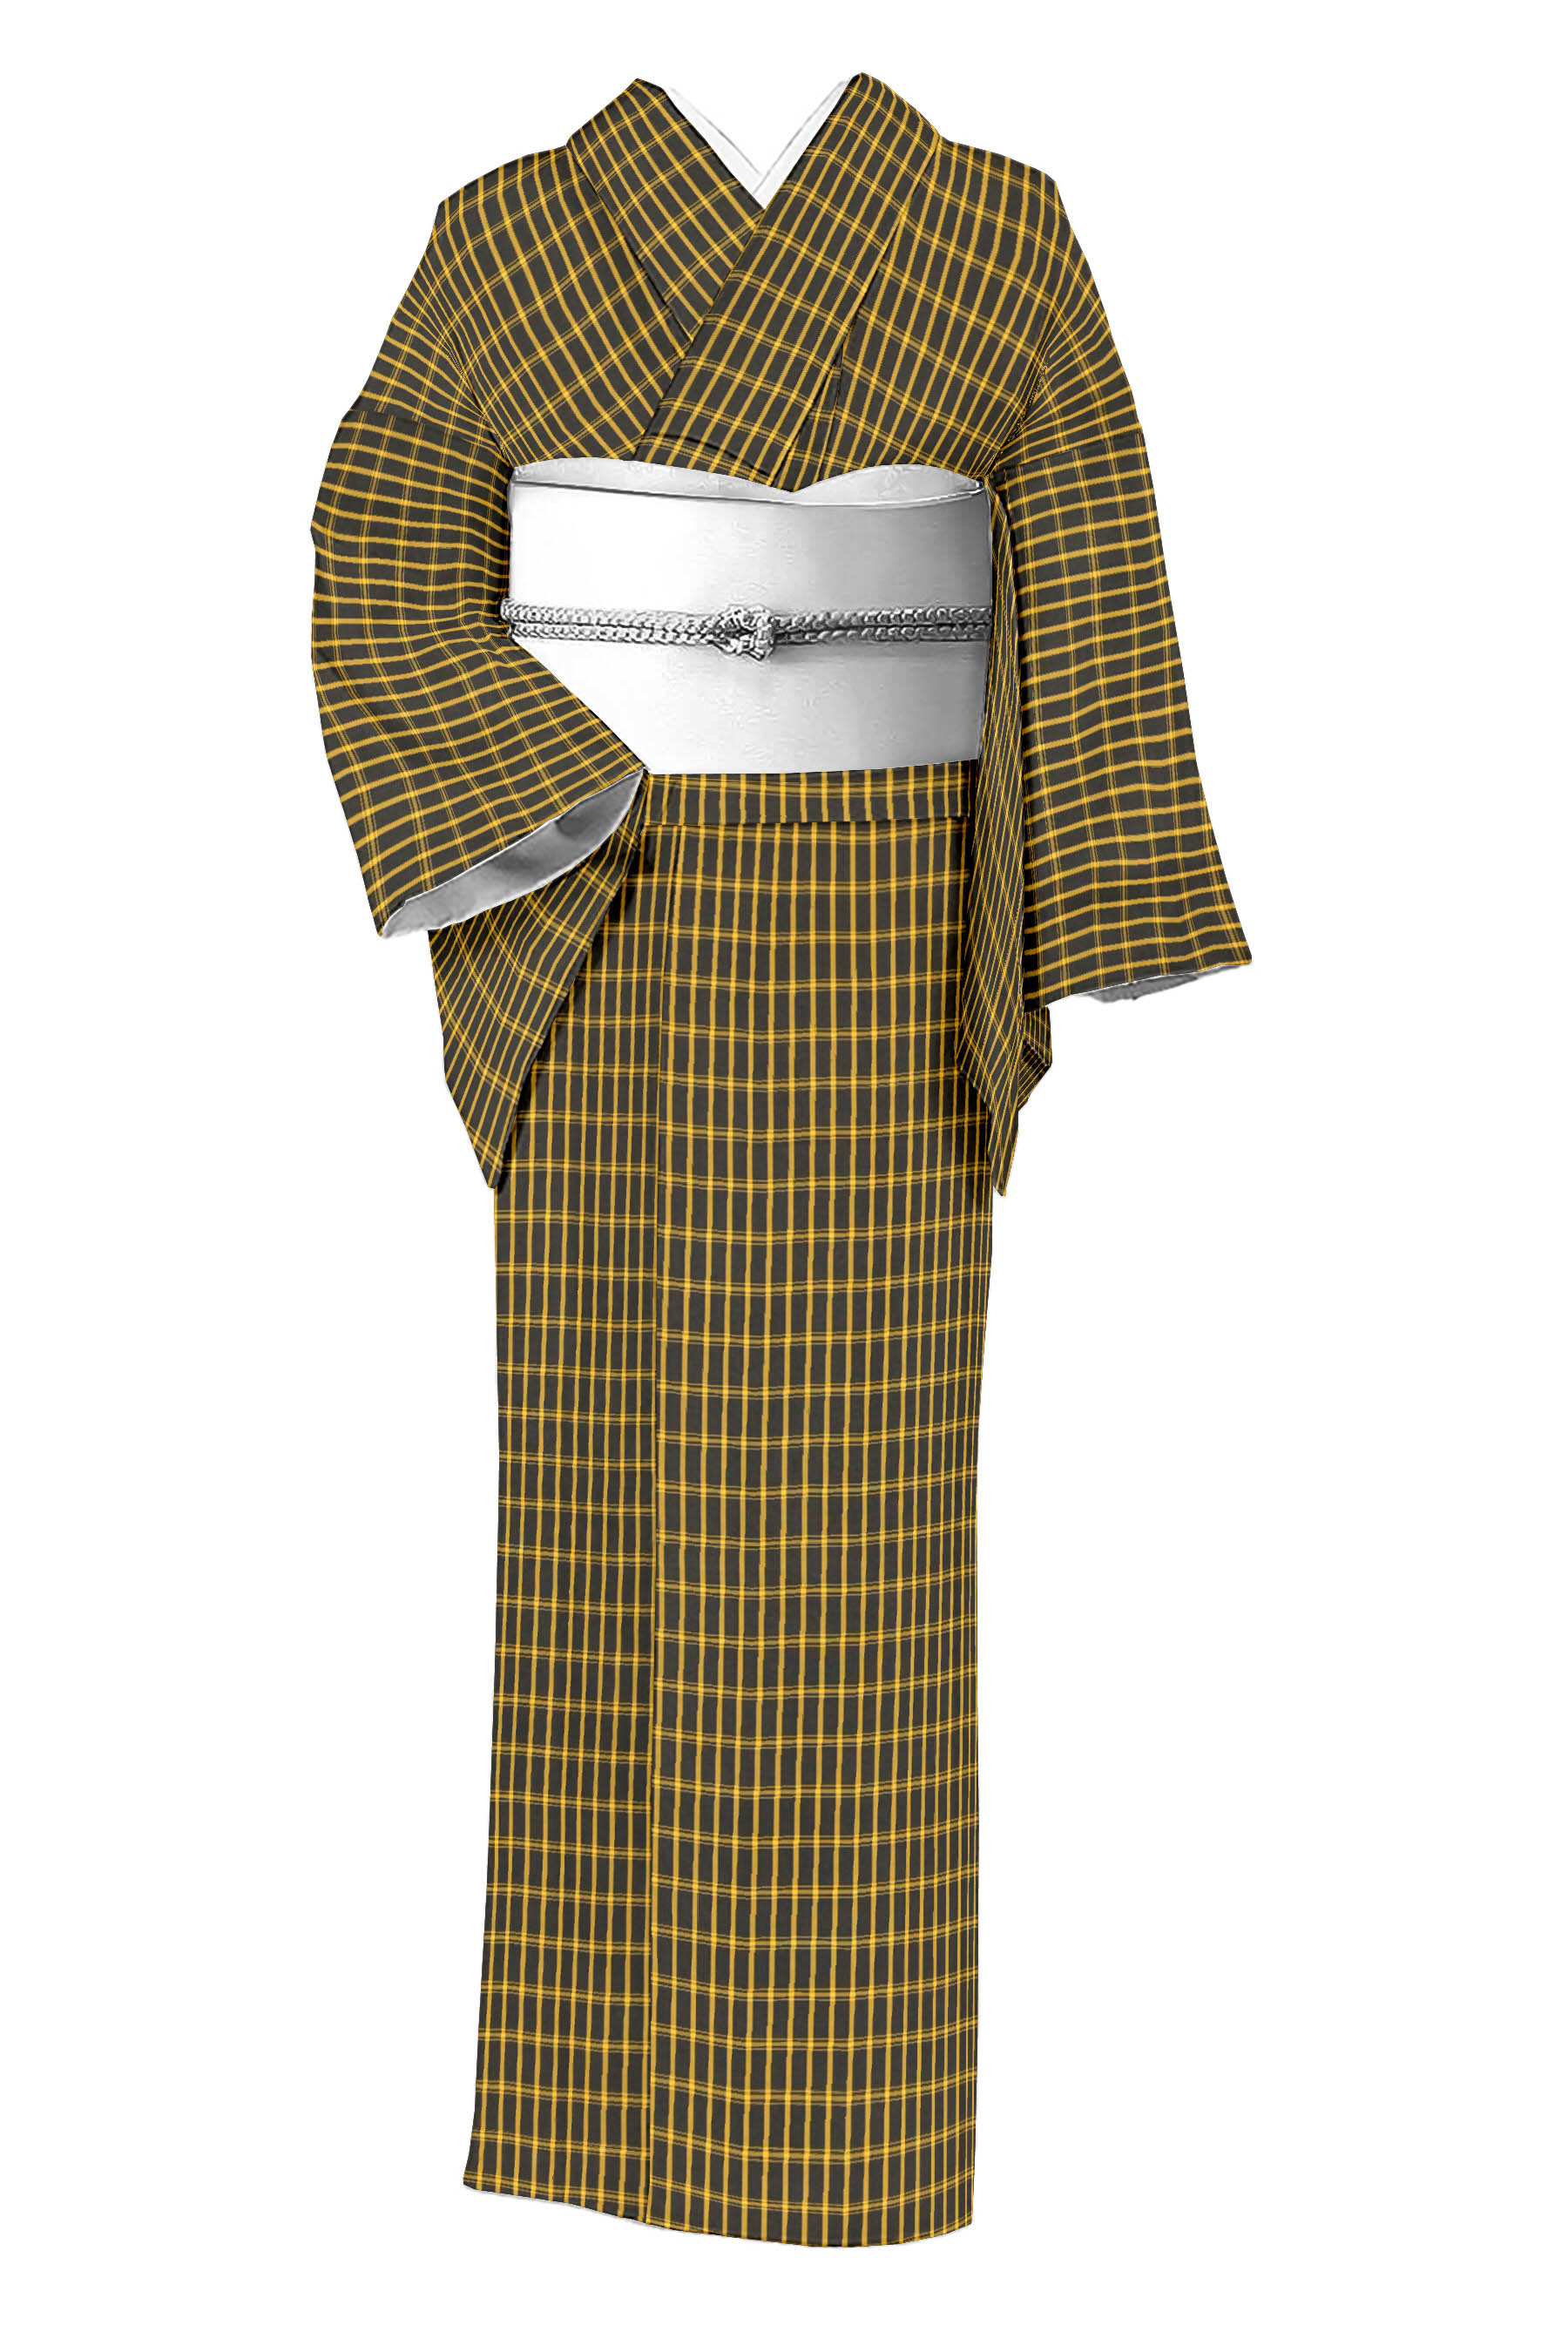 手織り正絹 黄八丈 粋横縞 半幅帯 - 浴衣/水着